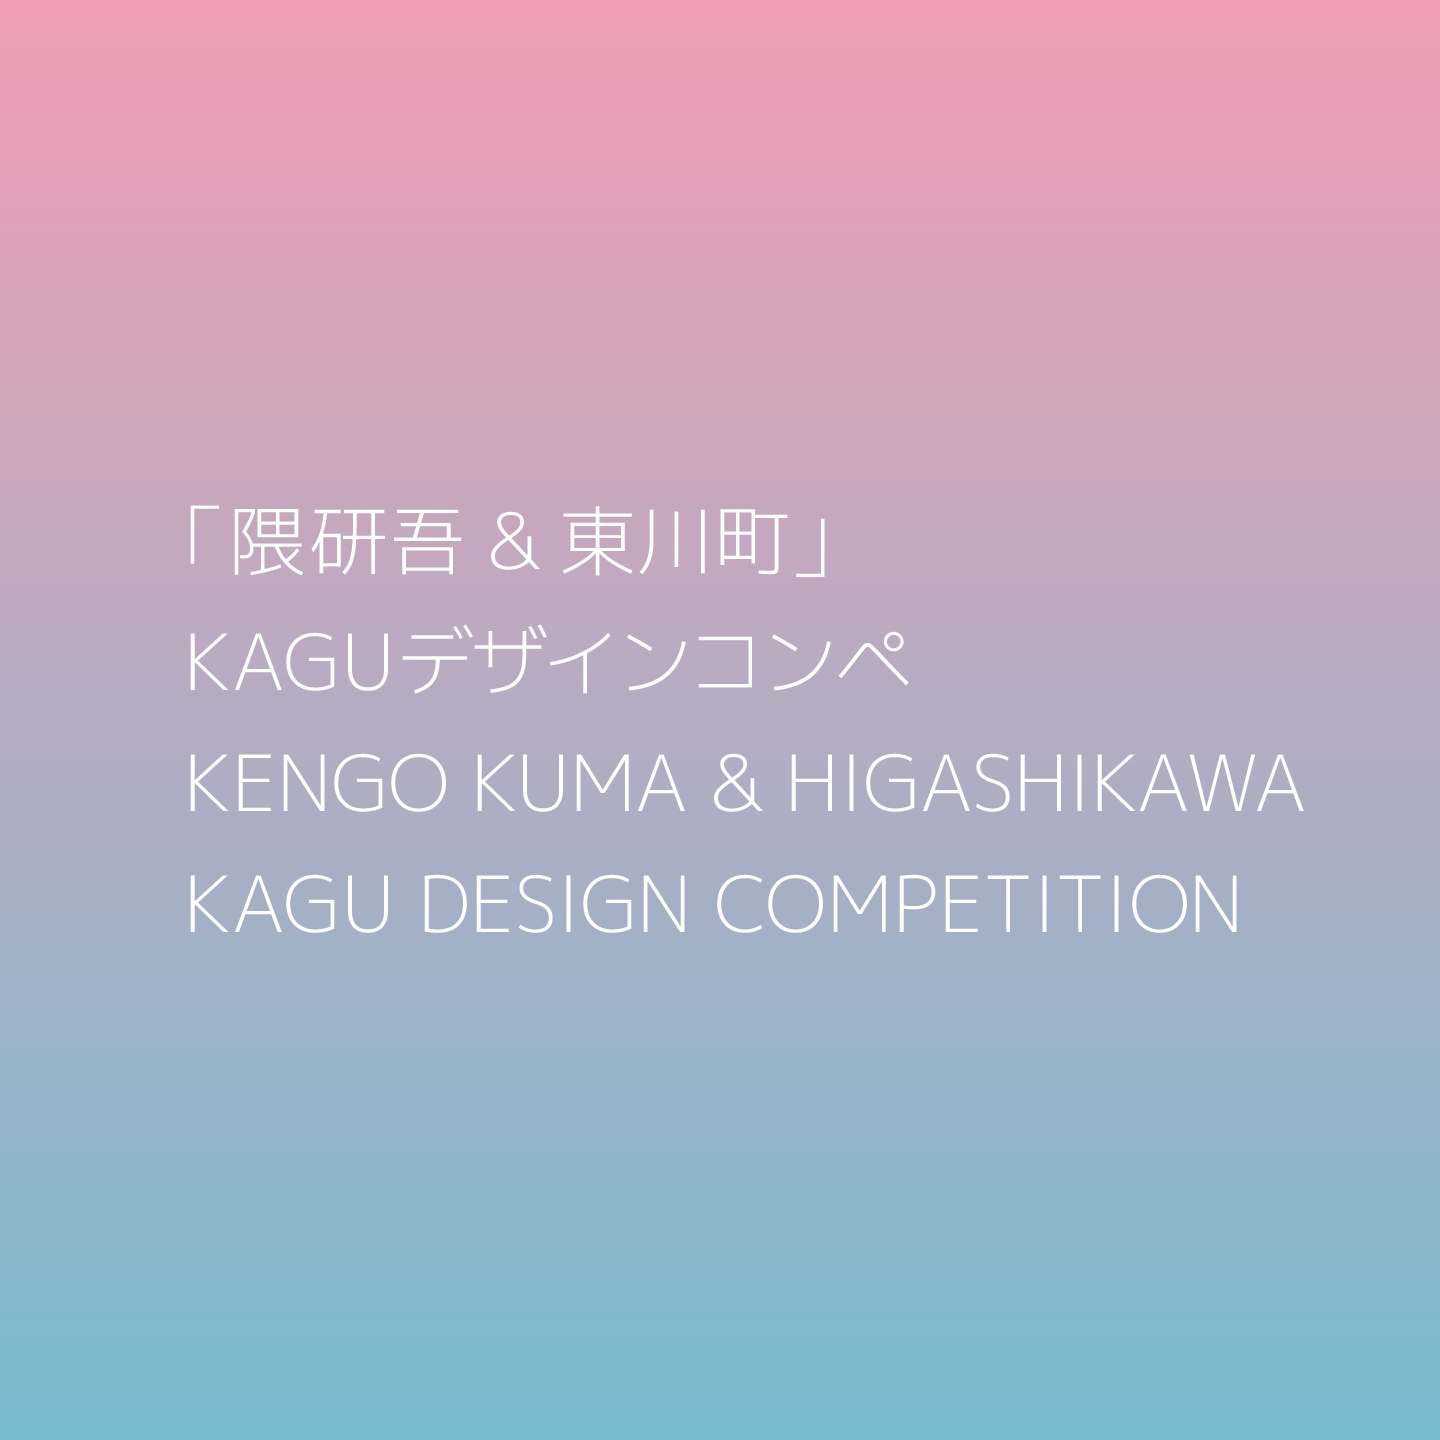 新しい暮らしに対応する自由なテーブルを　第2回「隈研吾&東川町」KAGU デザインコンペが作品募集中